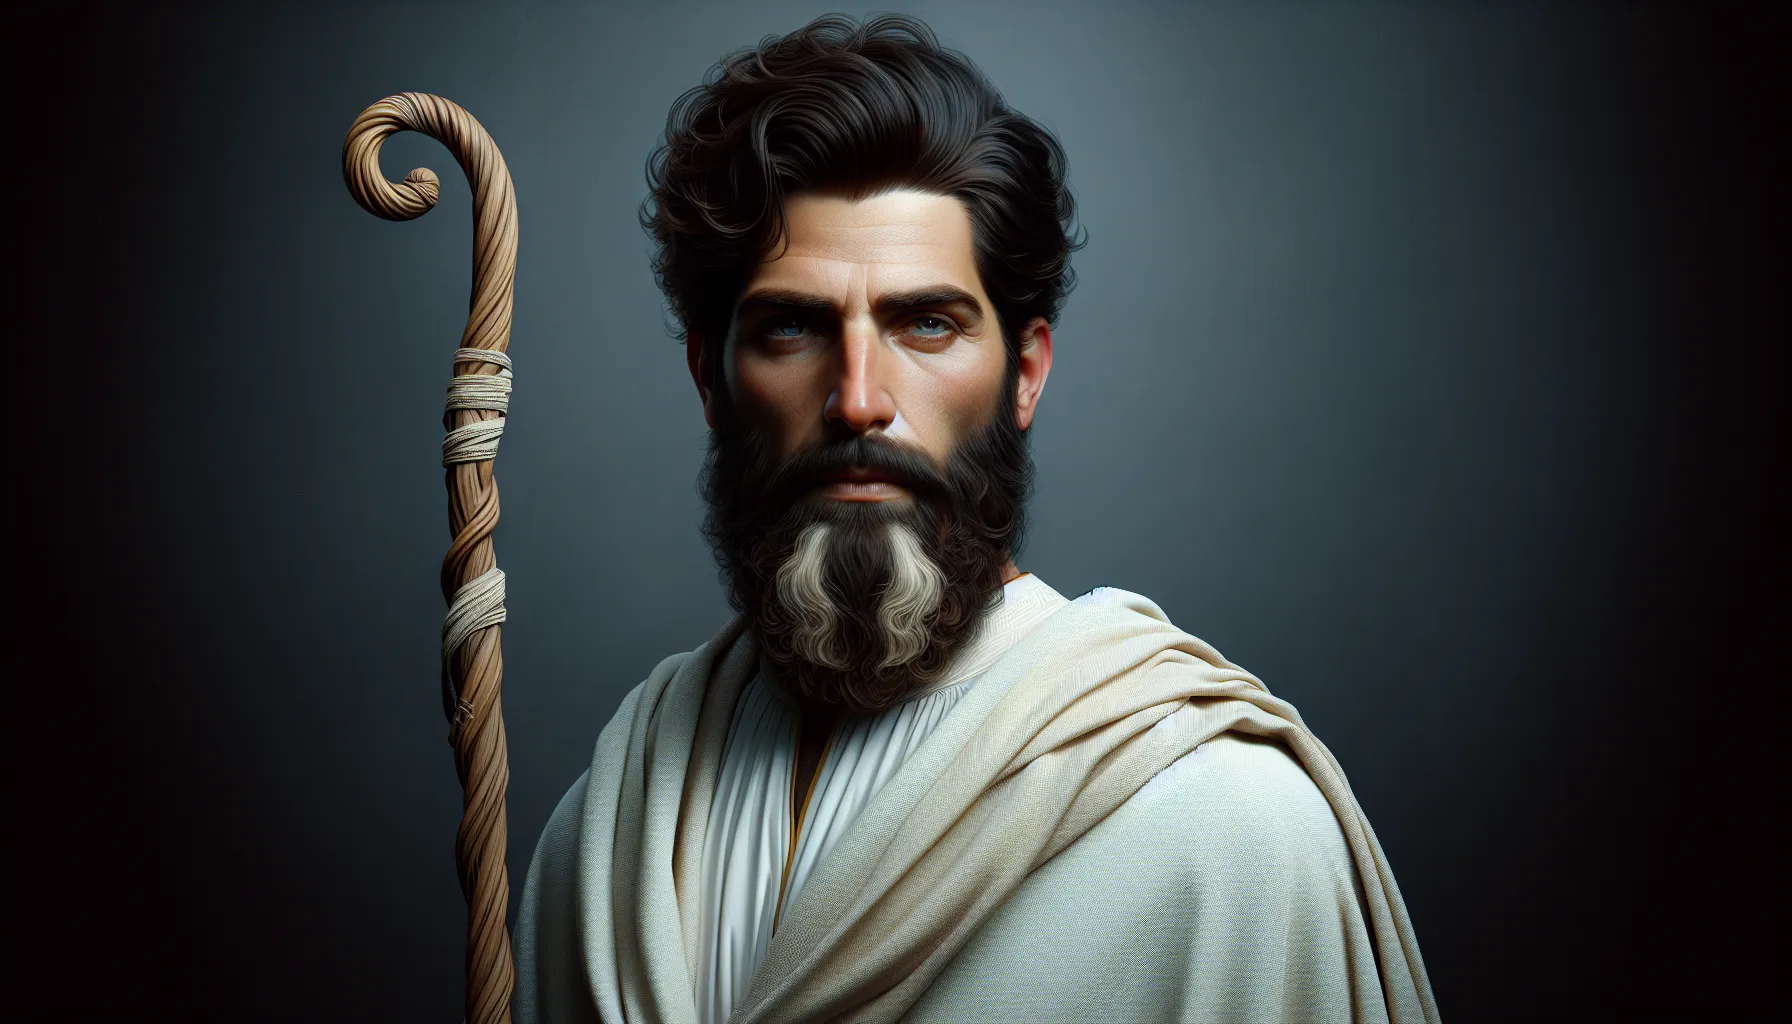 Imagen de un hombre con cabello oscuro y barba, vestido con túnica blanca y portando un bastón, representando la posible apariencia de Jesús según la historia.